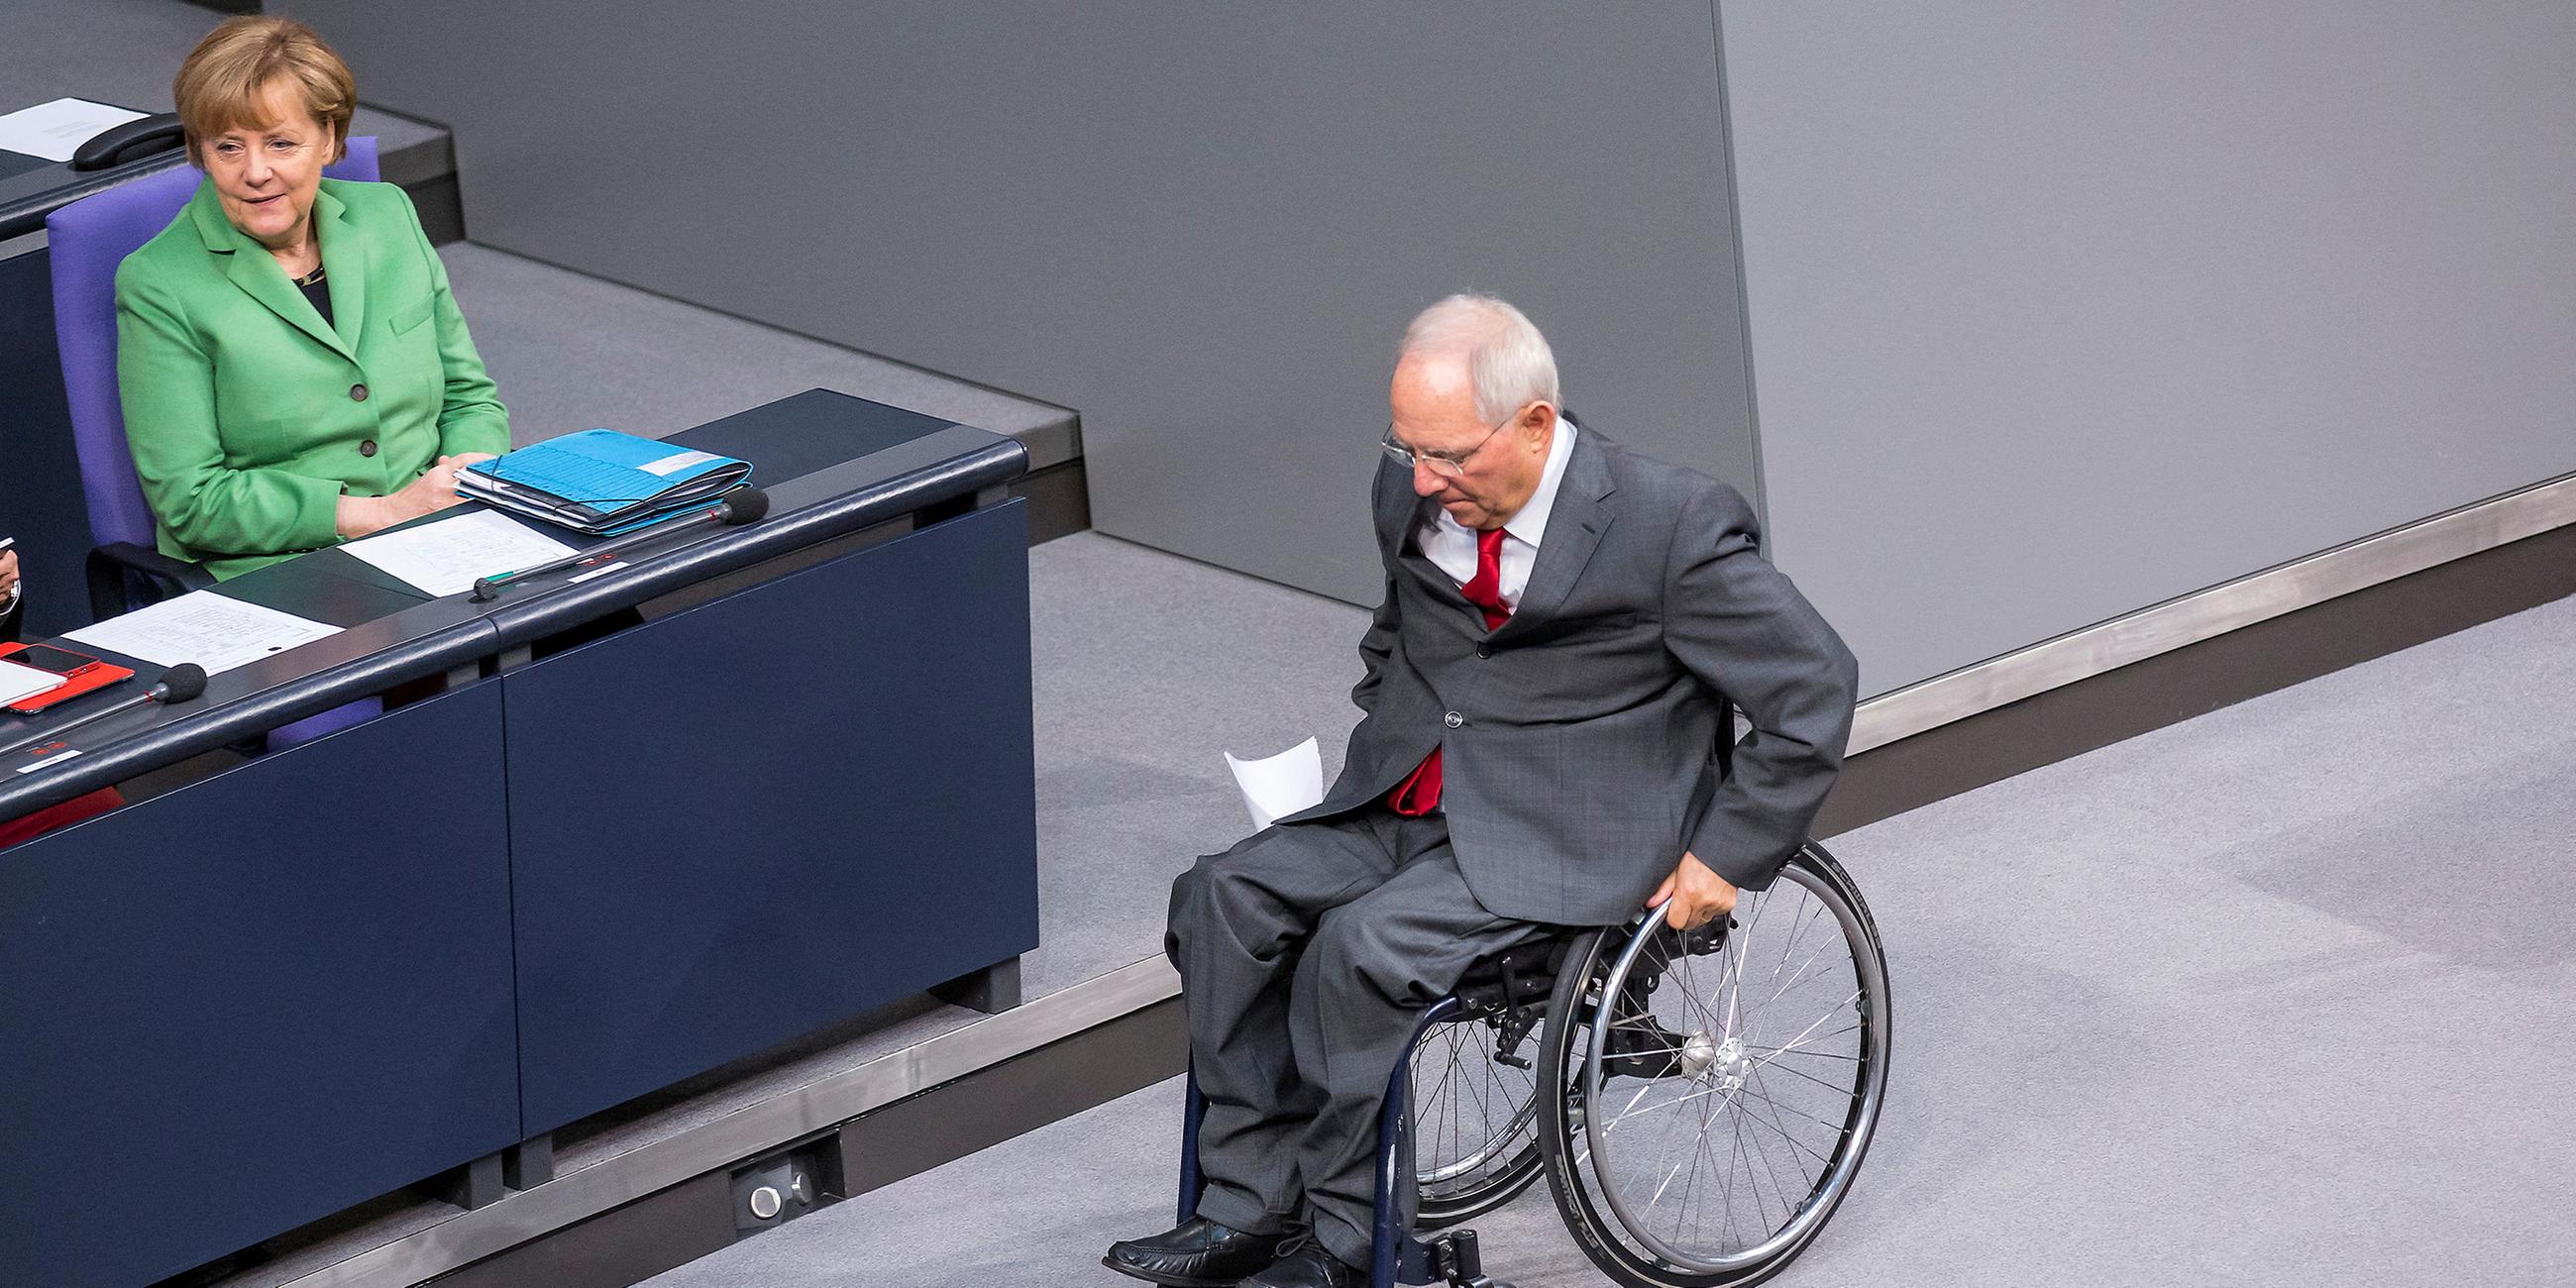 Merkel und Schaeuble im Rollstuhl